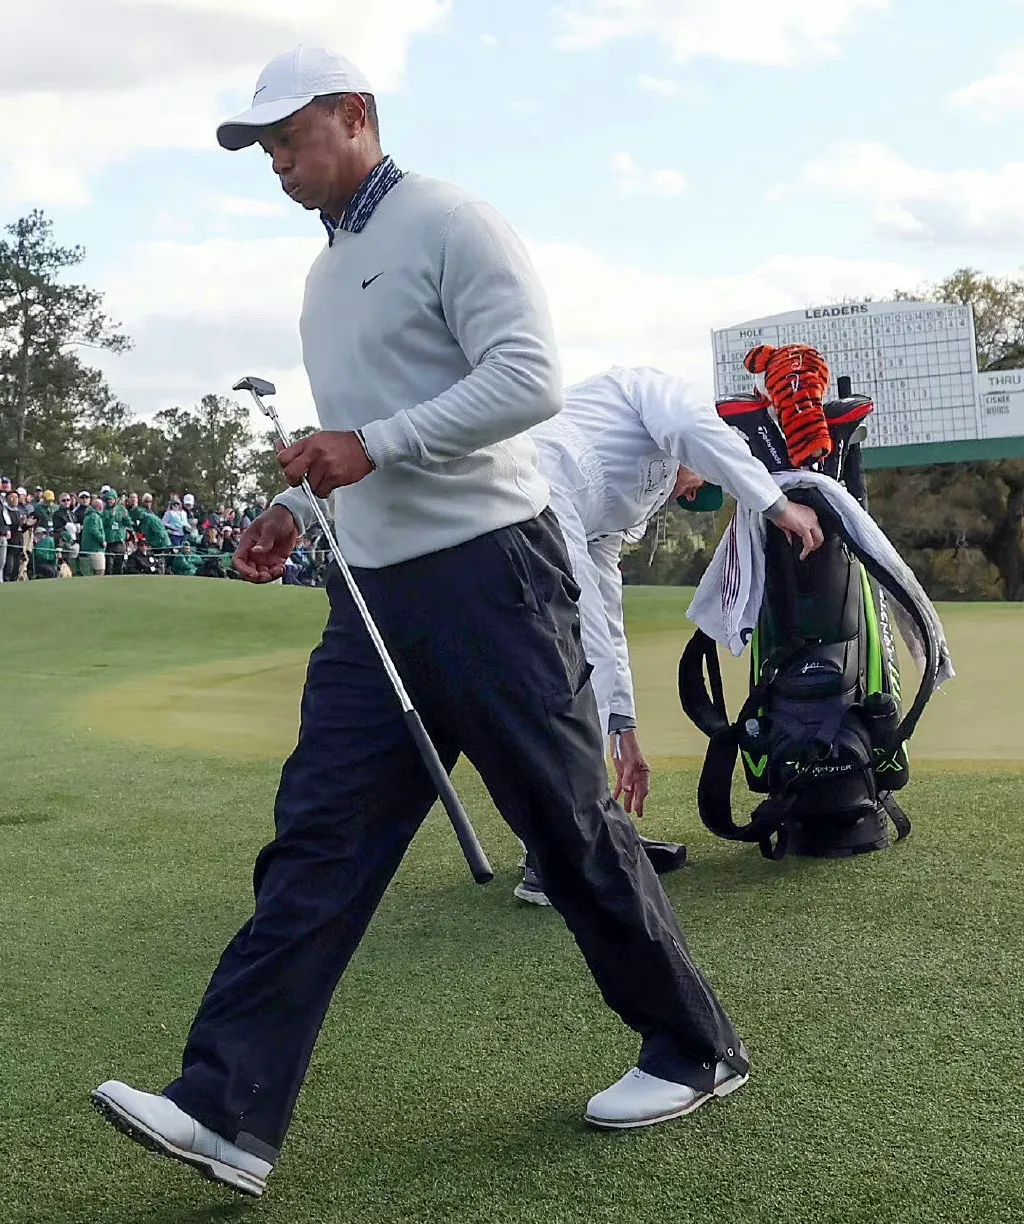 Die Welt jubelt den Toughen zu – Tiger Woods kehrt nach 508 Tagen zurück5